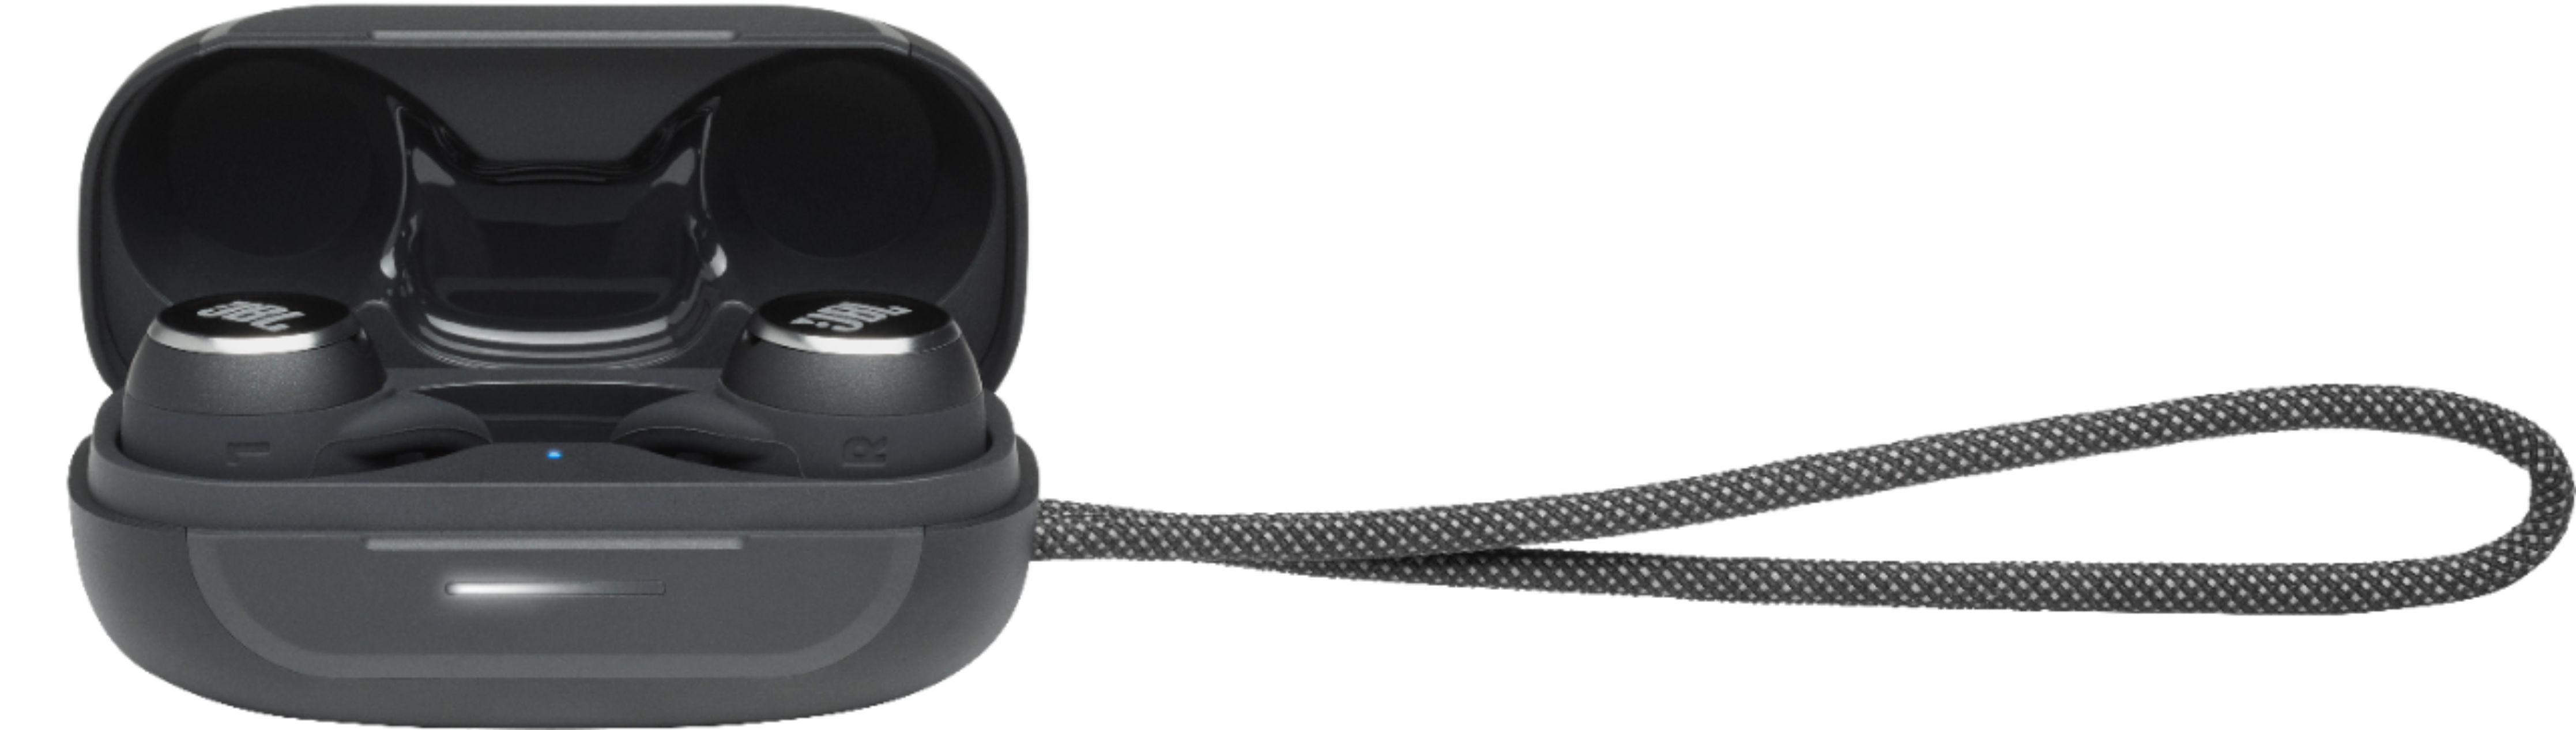 JBL Reflect Mini True Wireless Noise Cancelling In-Ear Earbuds Black  JBLREFLMININCBLKAM - Best Buy